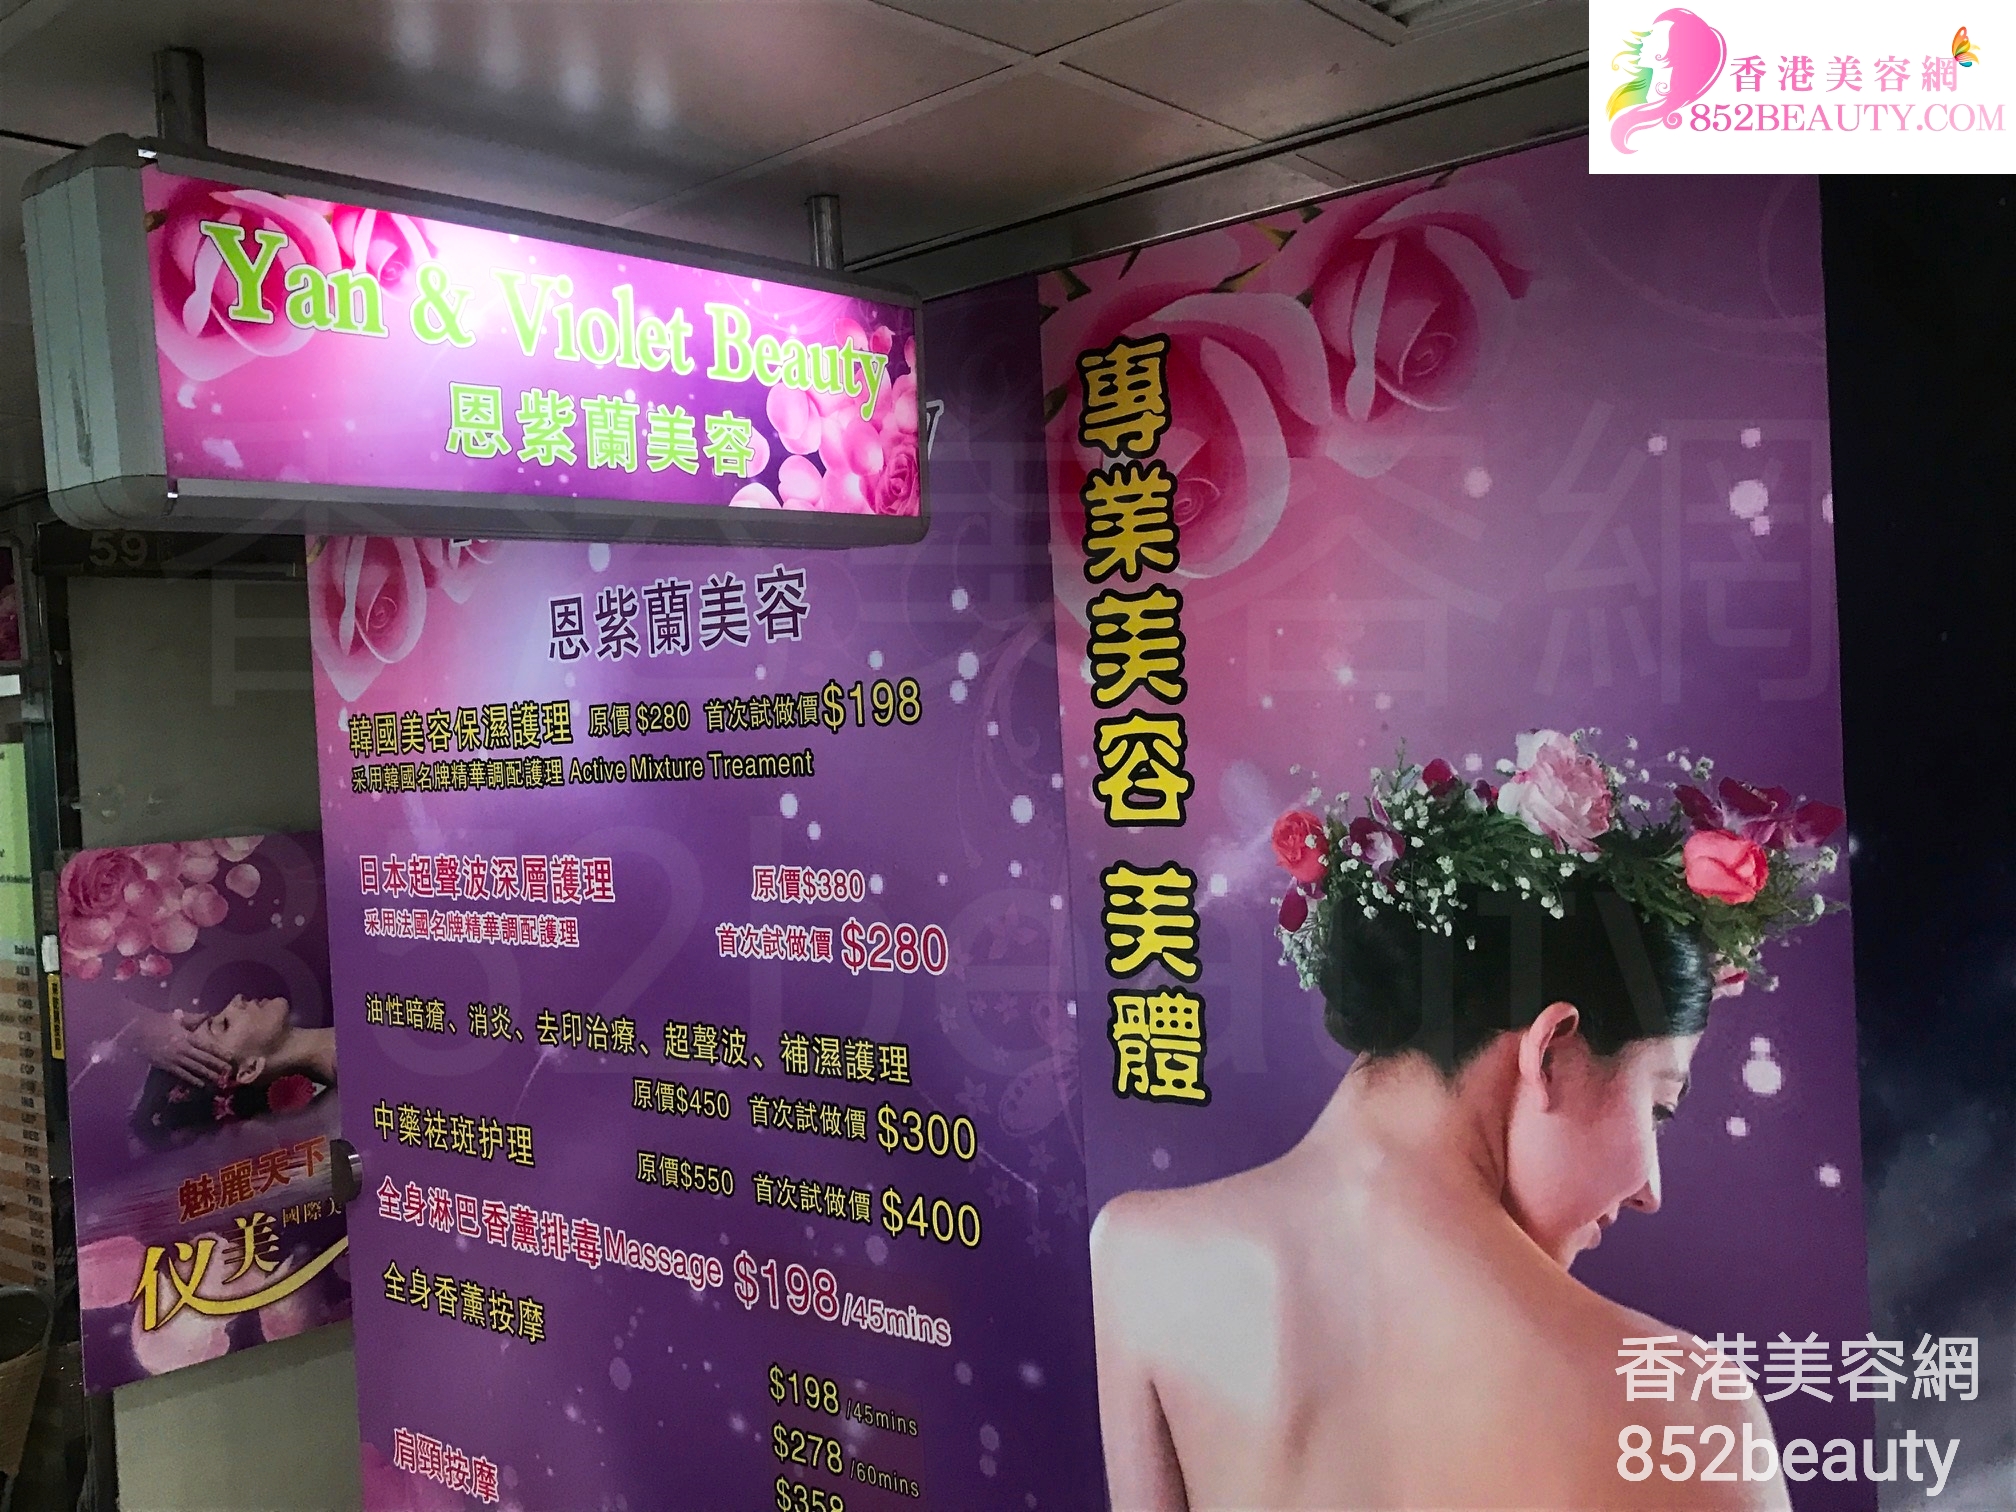 香港美容網 Hong Kong Beauty Salon 美容院 / 美容師: 恩紫蘭美容 Yan & Violet Beauty